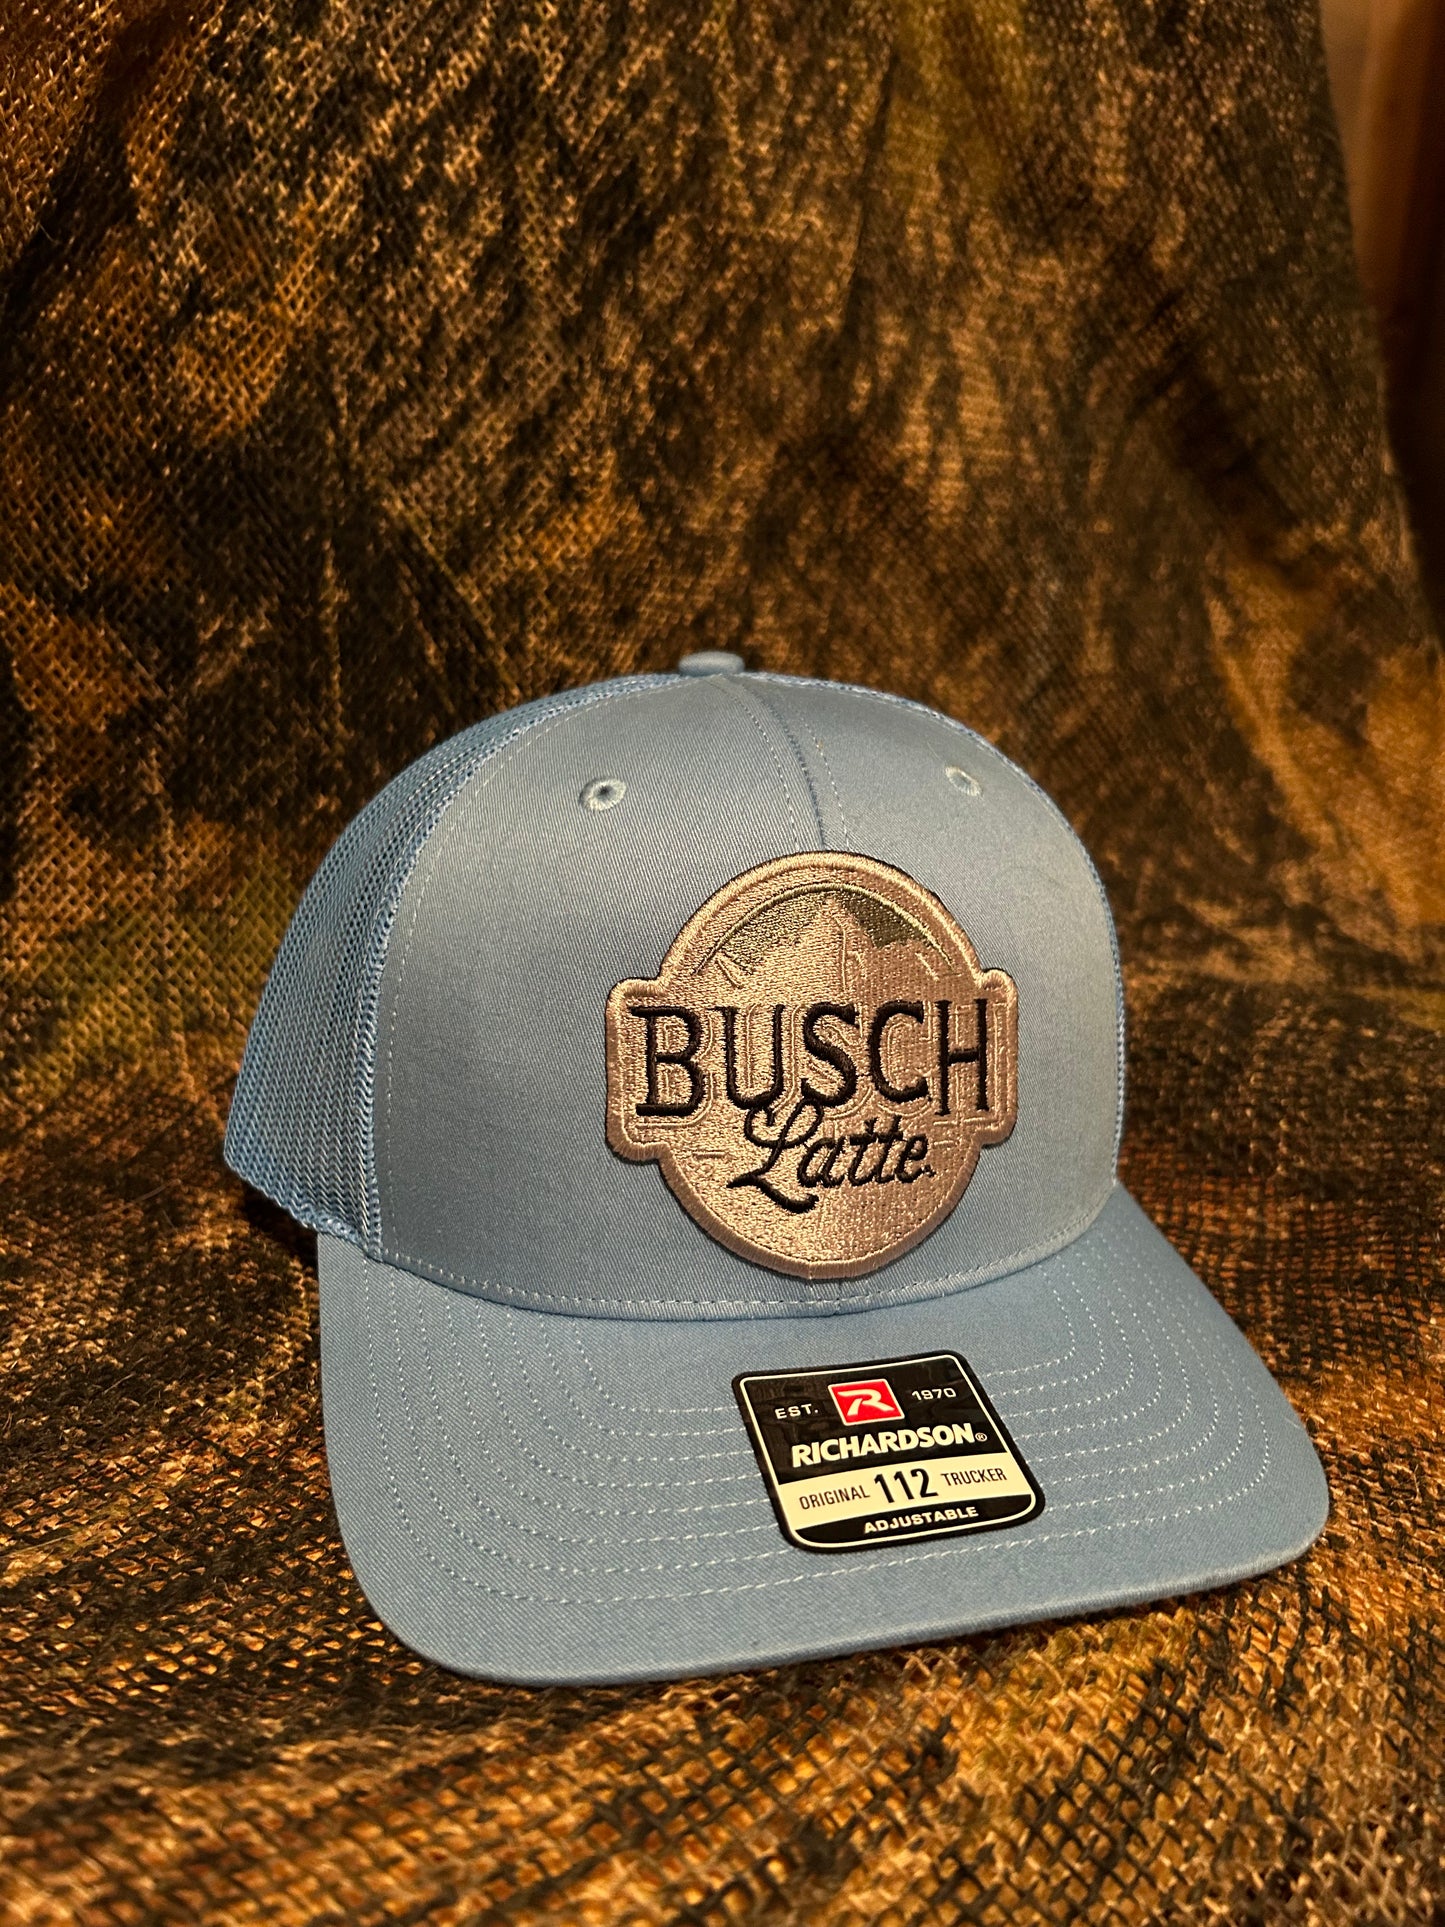 Busch Latte baby blue Richardson 112 trucker hat